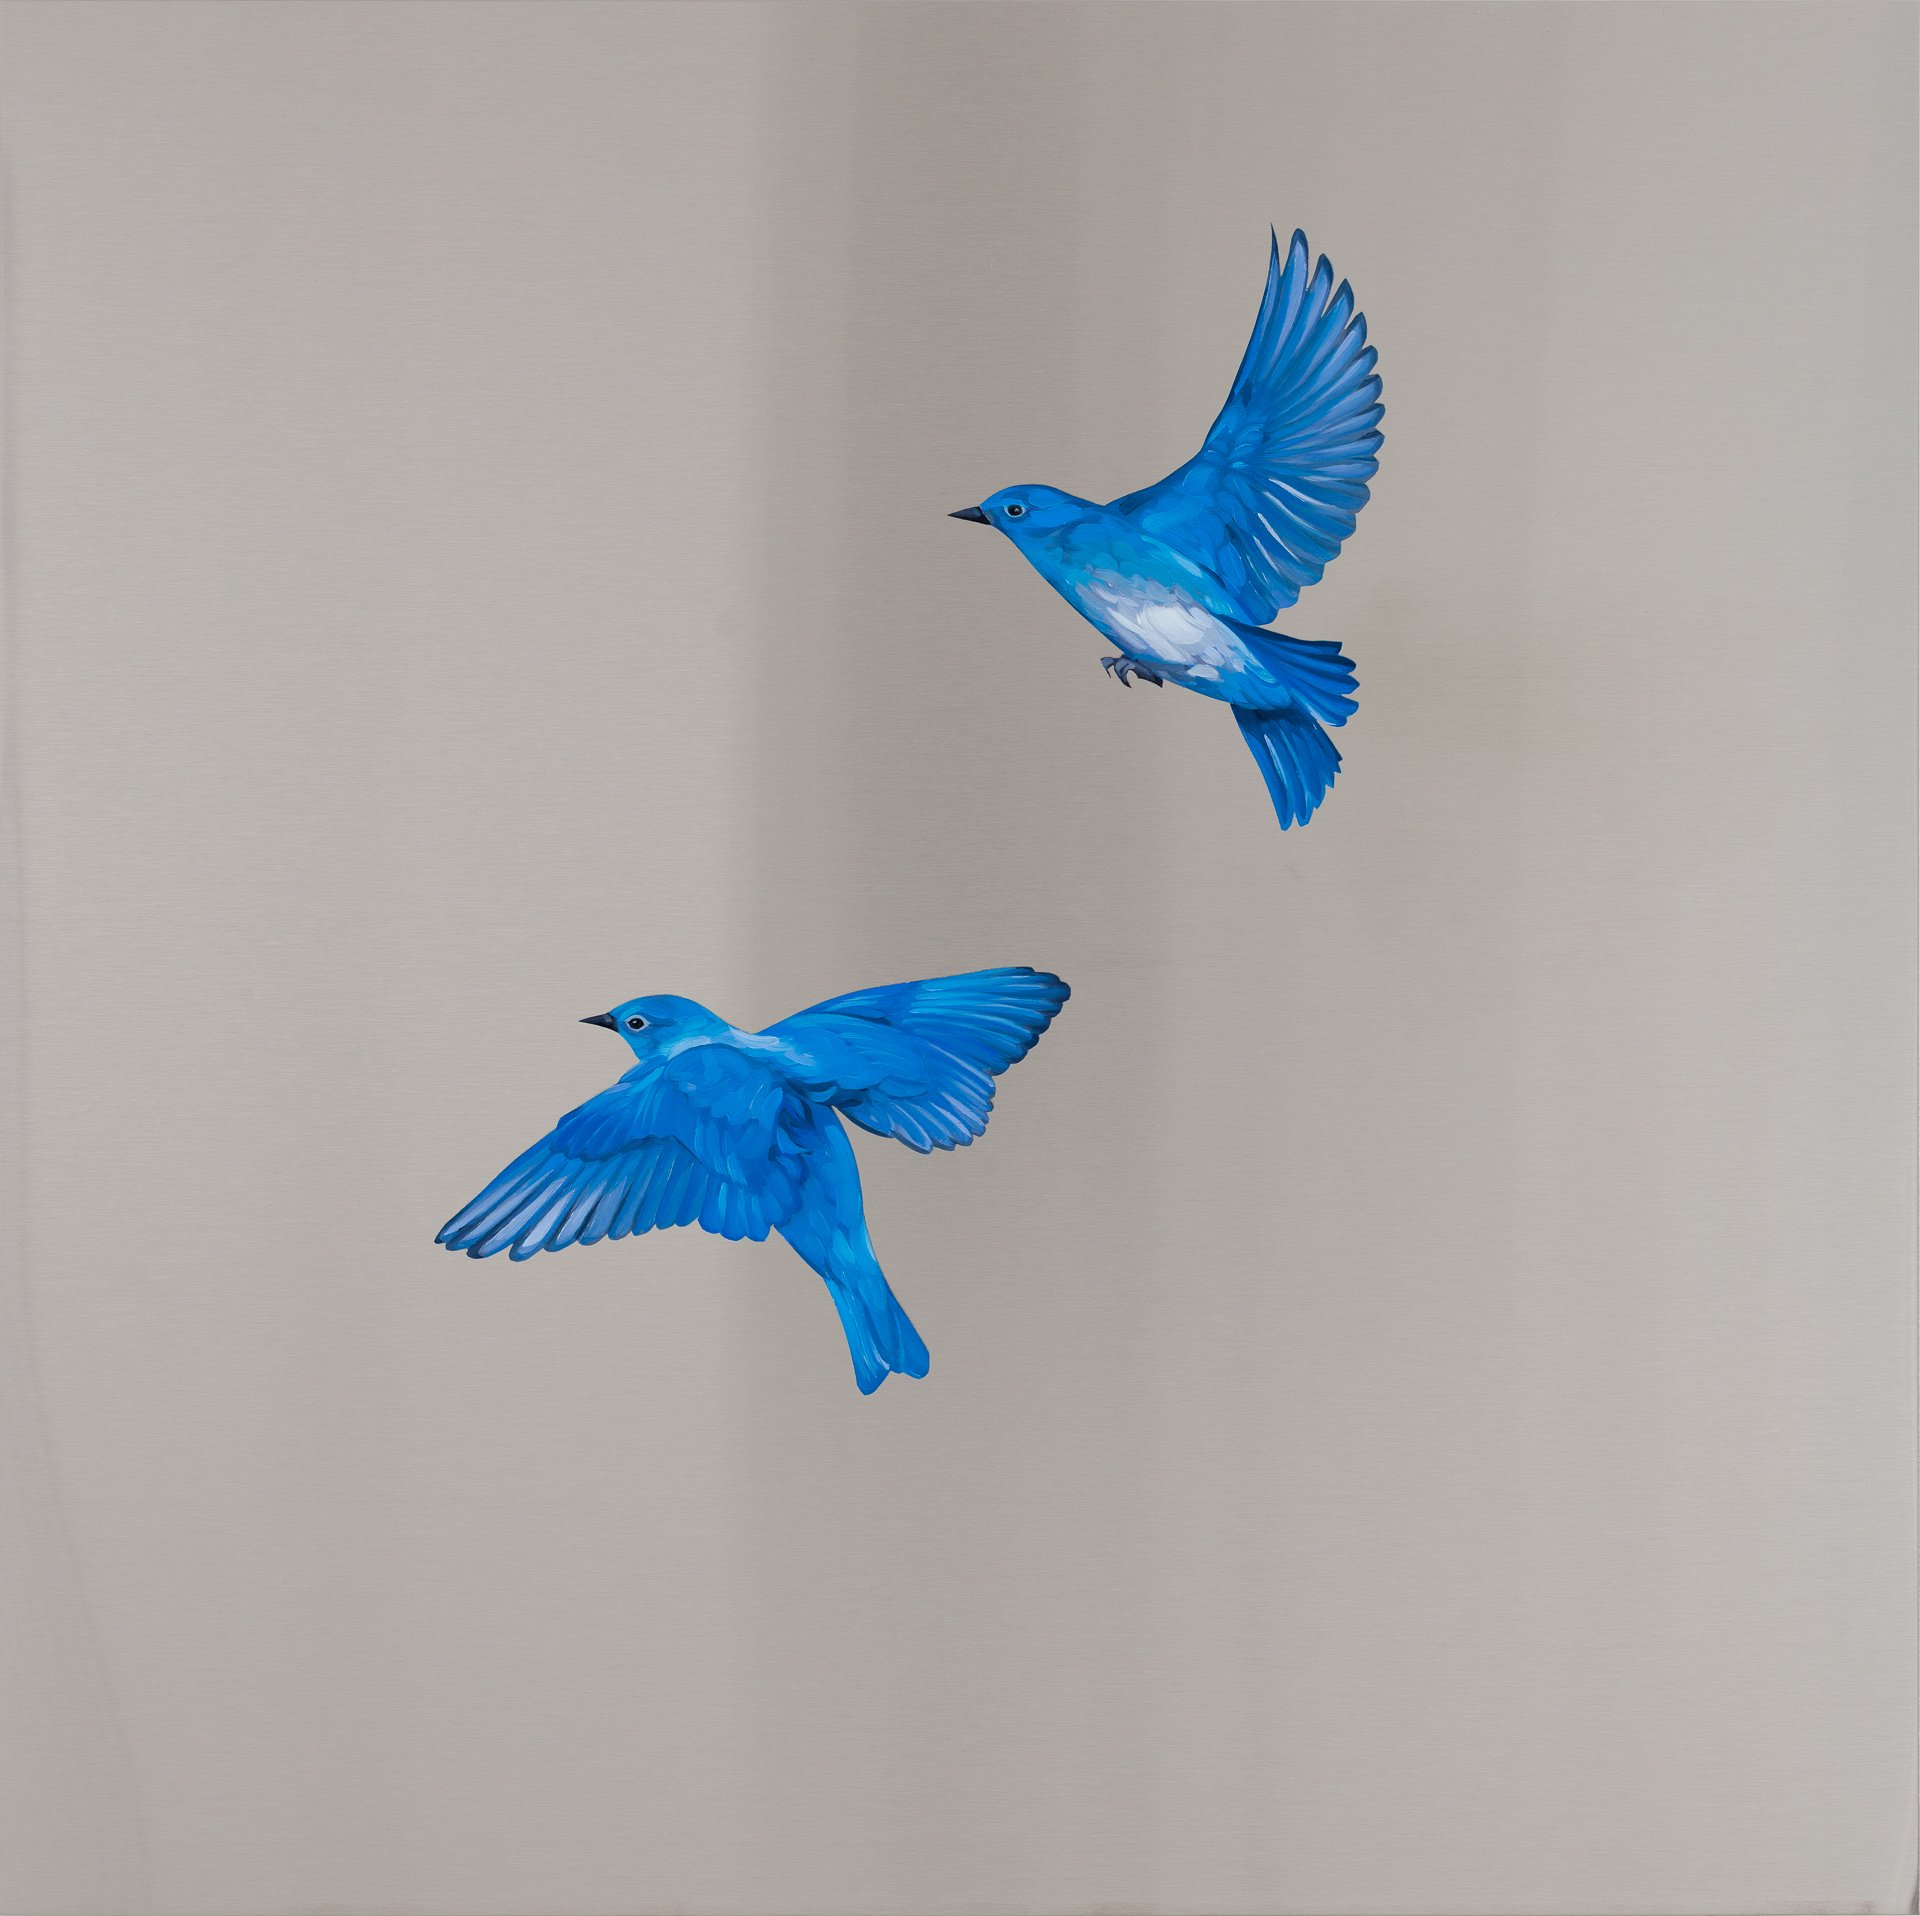  Mountain Bluebirds. Oil on stainless steel, 24in x 24in 